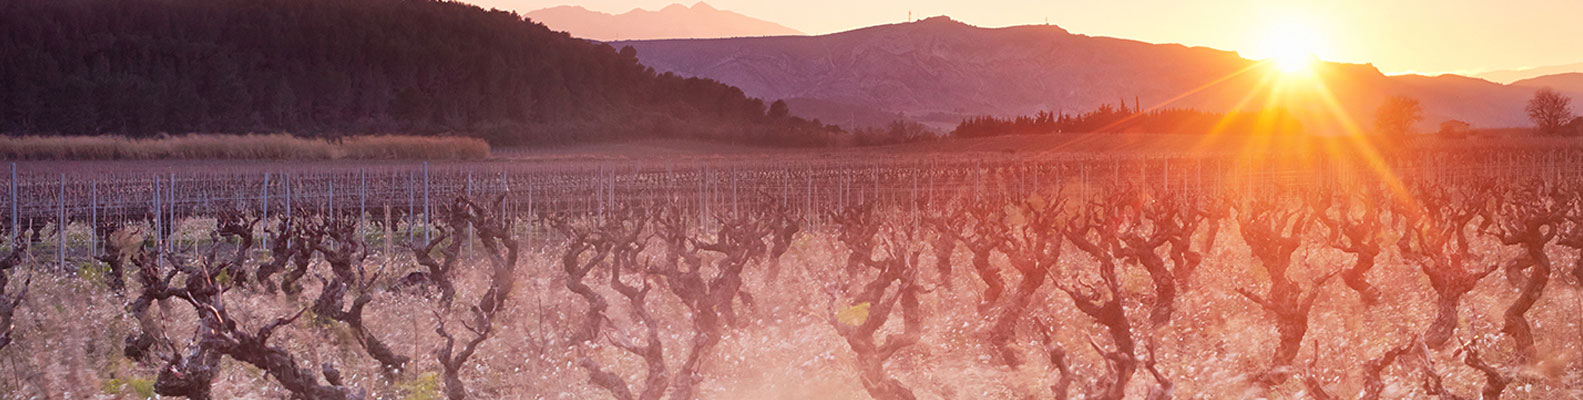 rendez vous avec vous igp cote catalanes 66 domaine riere cadene vin roussillon